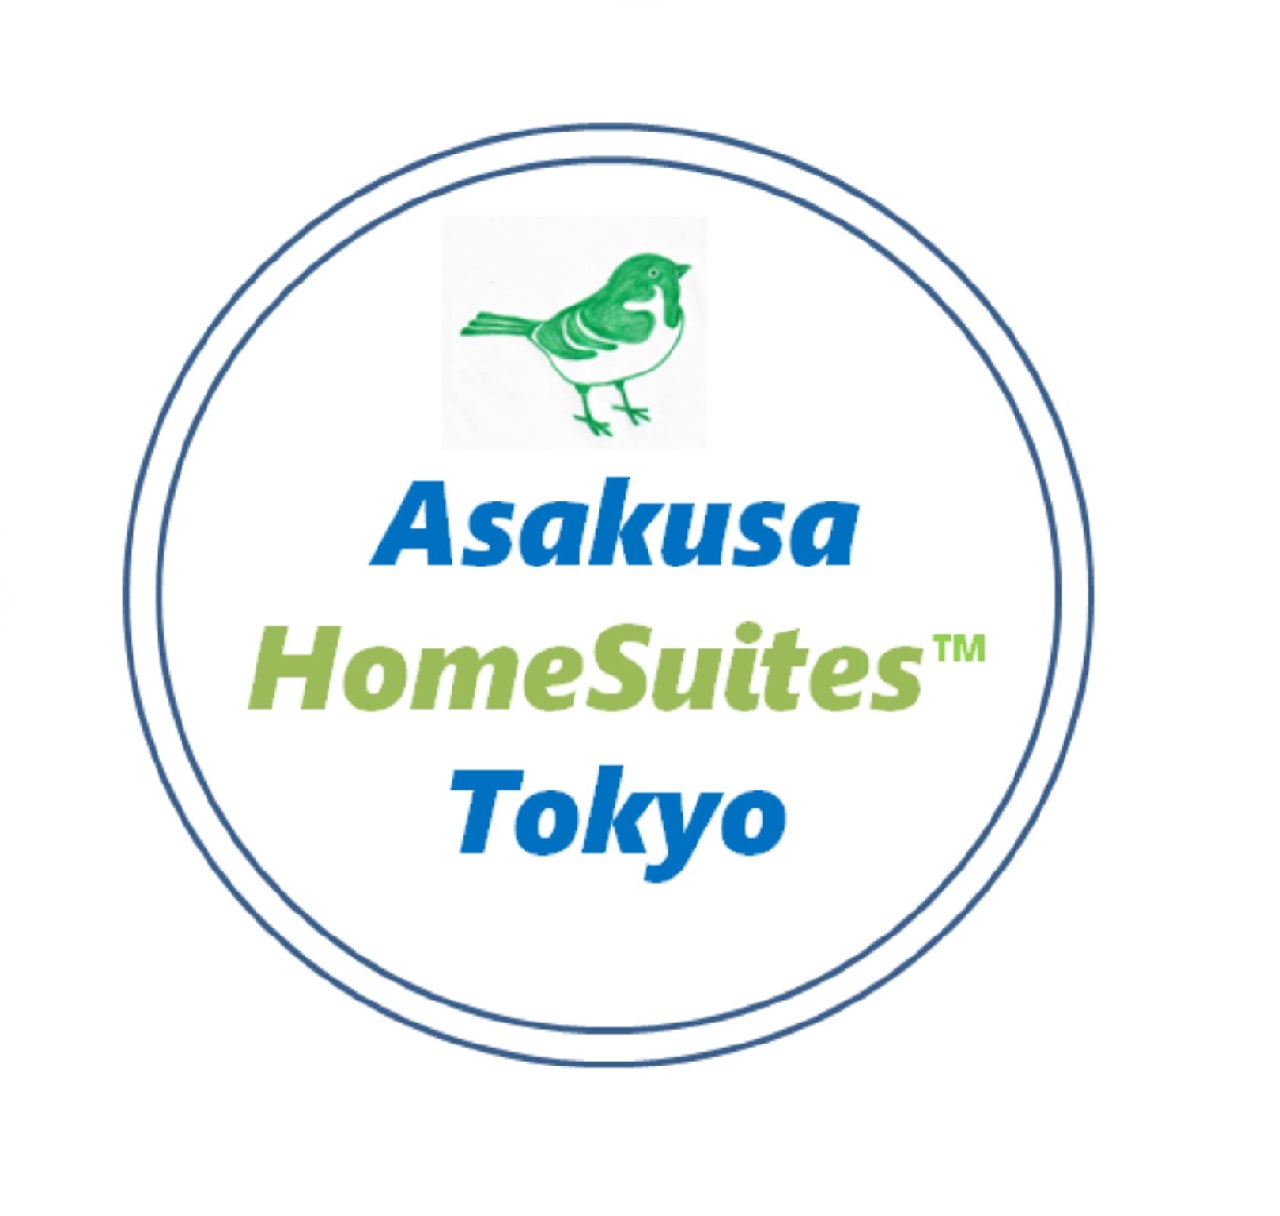 Asakusa HomeSuites Tokyo